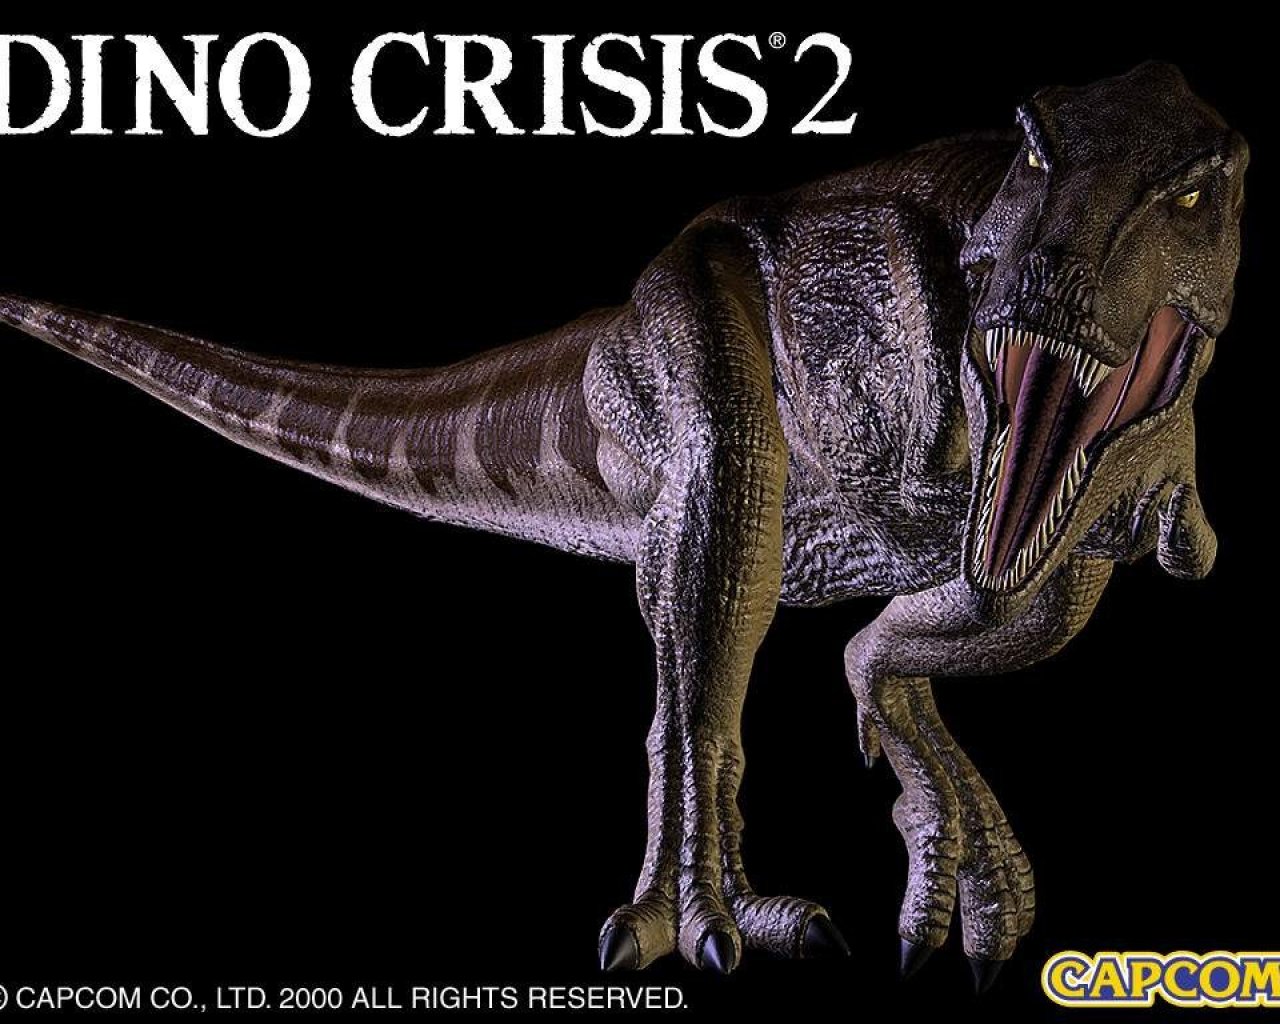 Dino Crisis2 Wallpaper Dino Crisis2 Wallpaper Crisis2 Desktop Wallpaper in High Resolution Kingdom Hearts Insider